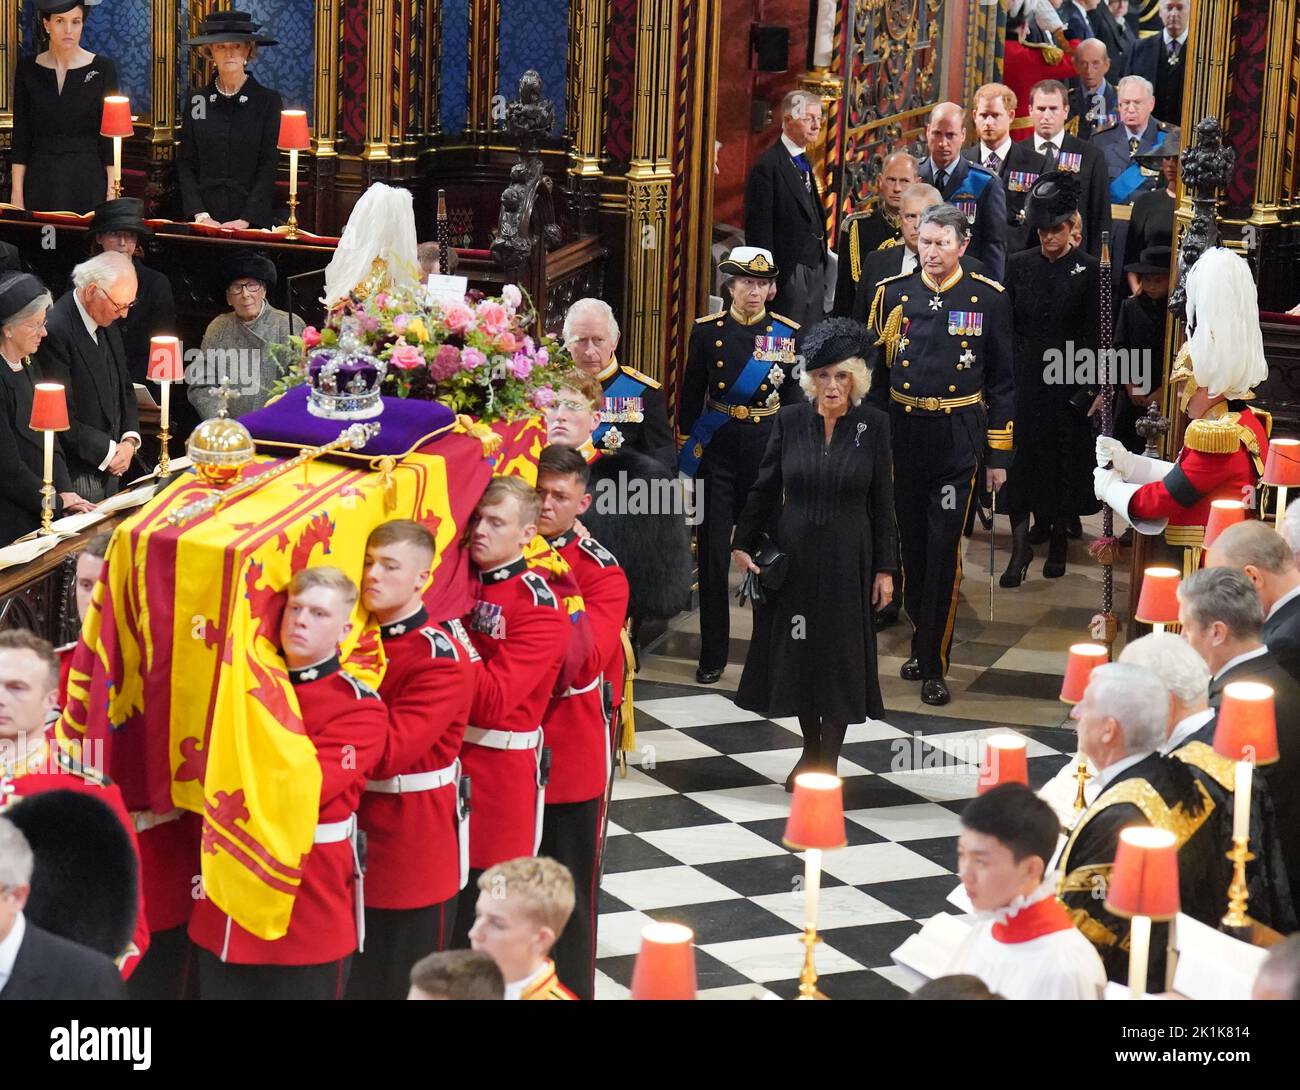 La bara della Regina Elisabetta II viene trasportata nell'Abbazia di Westminster, seguita da Re Carlo III, la Regina Consorte, la Principessa reale, il Vice Ammiraglio Sir Tim Laurence, il Duca di York, il Conte di Wessex, la Contessa di Wessex, il Principe di Galles, la Principessa di Galles, il Principe Giorgio, Principessa Charlotte, il Duca di Sussex, la Duchessa di Sussex e Peter Phillips, per il suo funerale di Stato presso l'Abbazia di Londra. Data immagine: Lunedì 19 settembre 2022. Foto Stock